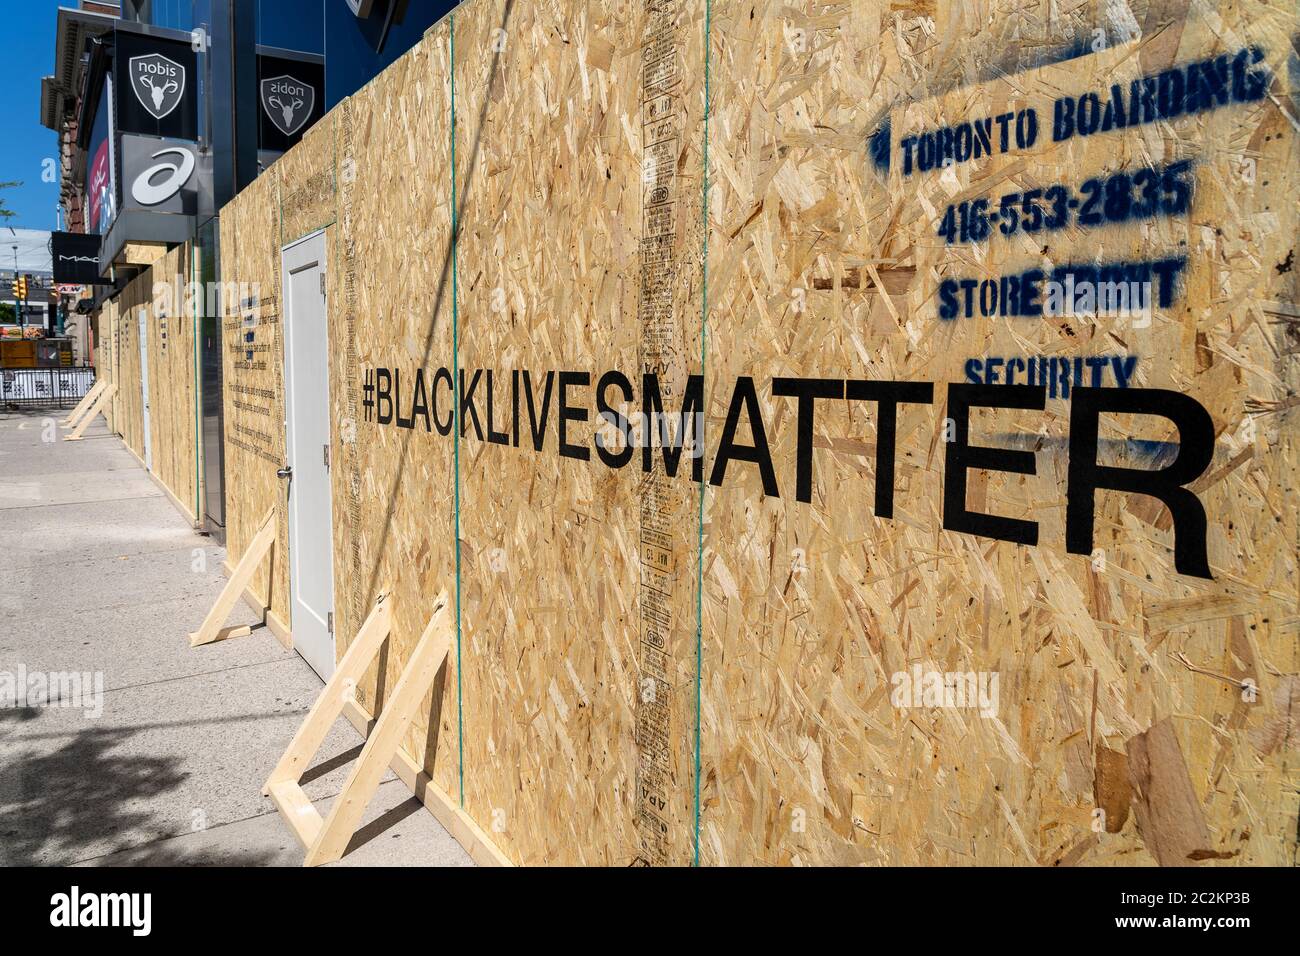 Monté en front de vente dans le centre-ville de Toronto, montrant le message de Black Lives Matter écrit à l'avant pour soutenir le mouvement social contre l'injustice raciale. Banque D'Images